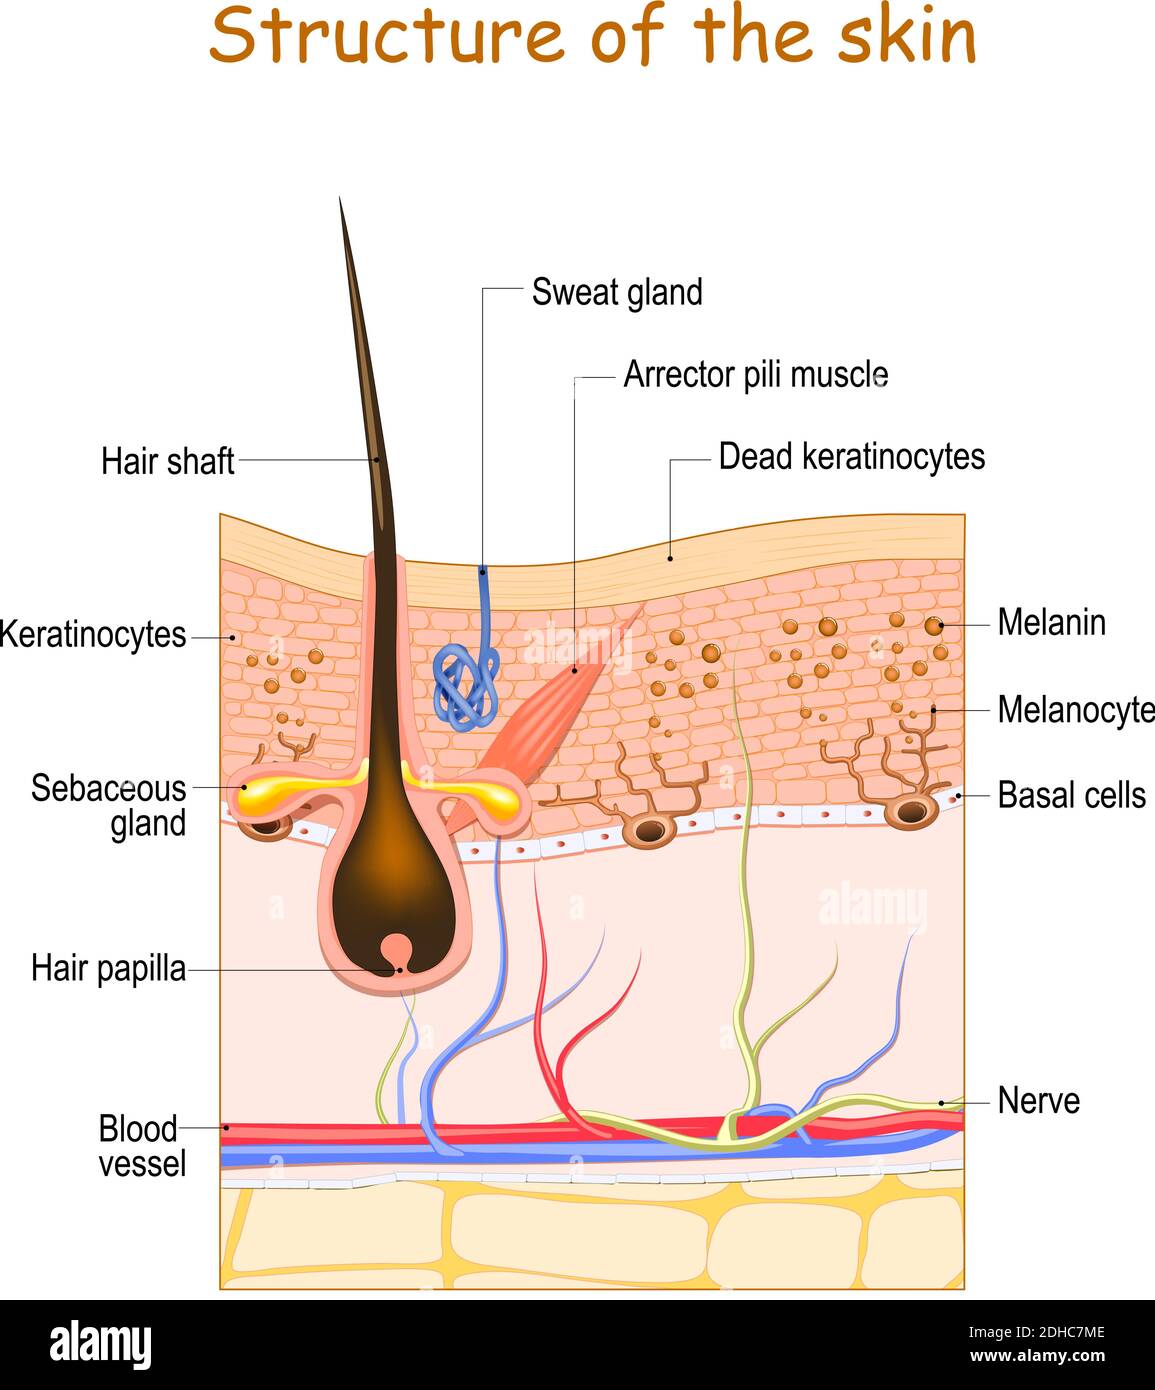 Couches de peau avec follicule pileux, glande sueur et glande sébacée. Structure cellulaire de la peau humaine. Illustration vectorielle Illustration de Vecteur